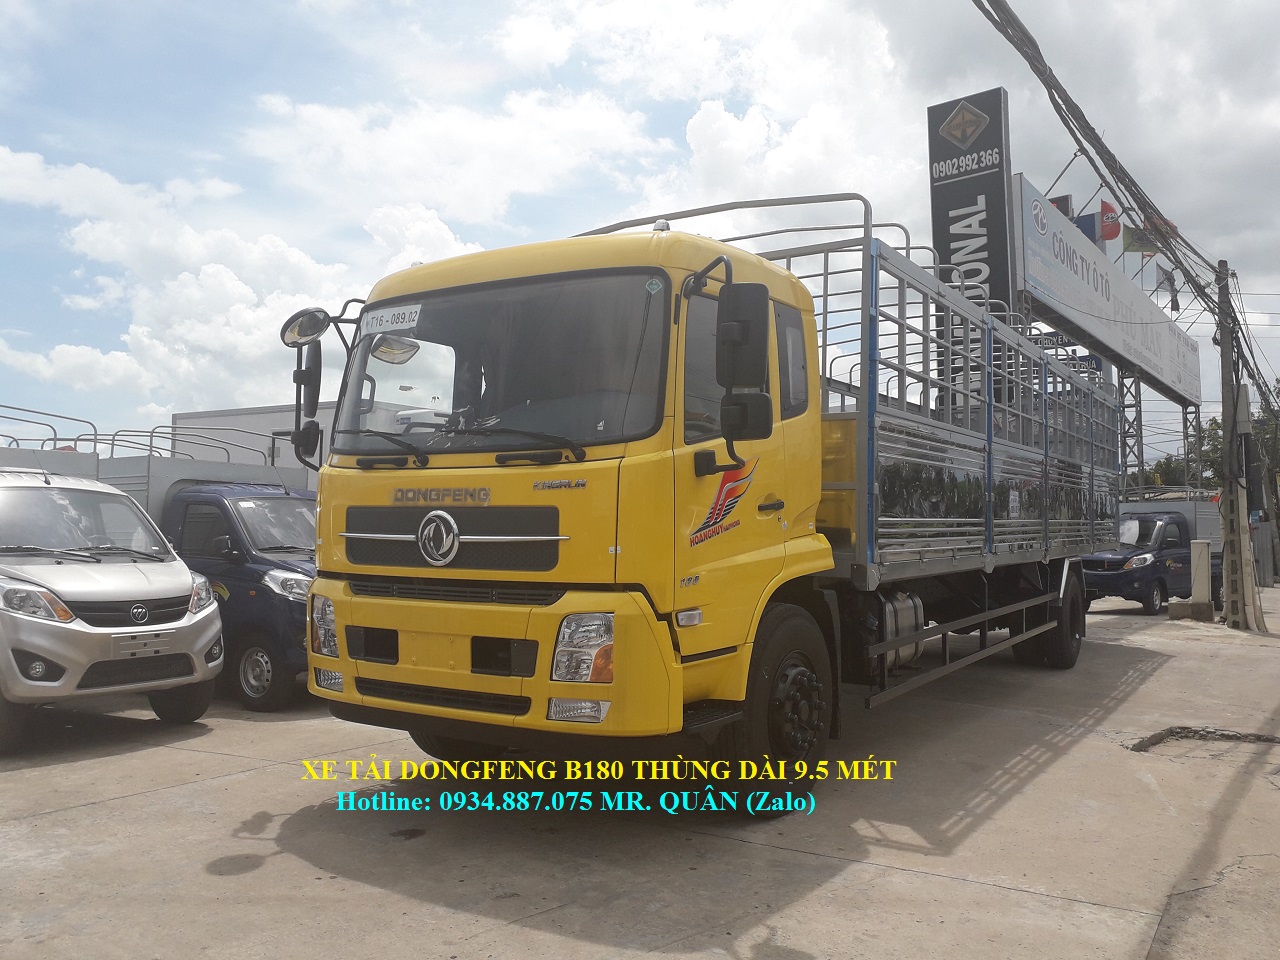 JRD HFC 2019 - Bán xe tải Dongfeng B180 8 tấn (8T) thùng dài 9.5m nhập khẩu nguyên chiếc